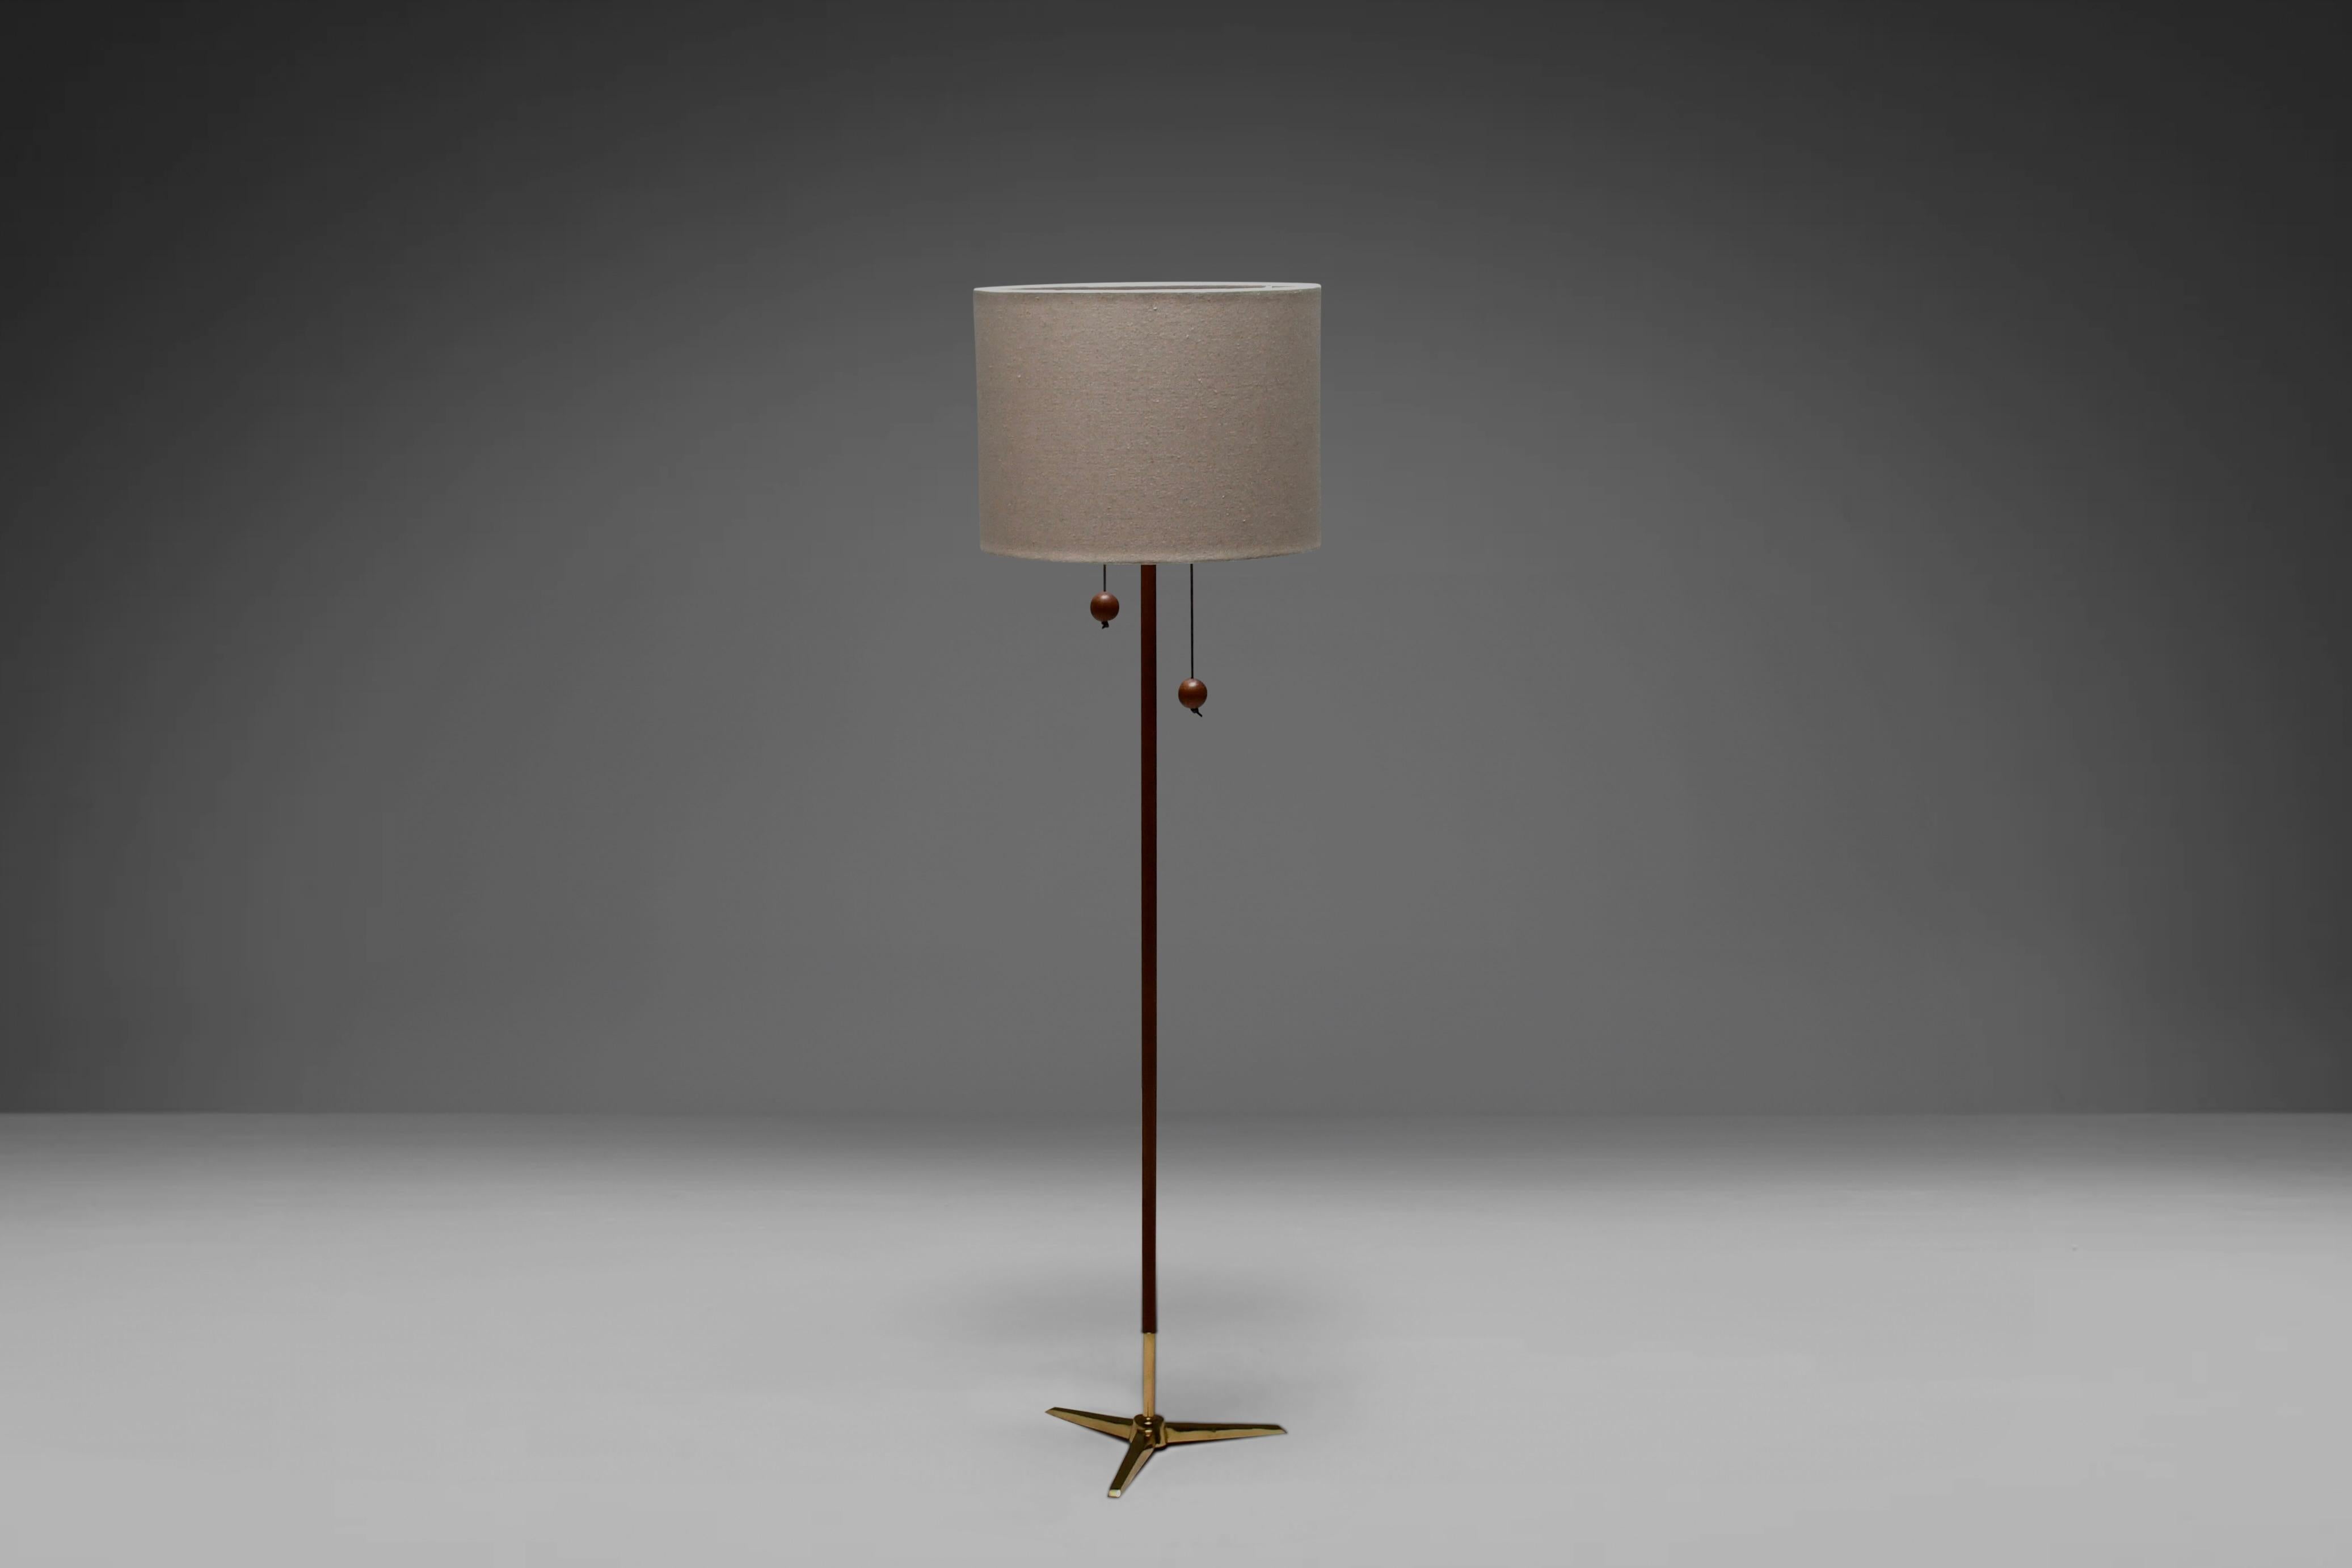 Scandinavian Modern Tripod Floor Lamp by Fog & Mørup made of Teak and Brass, Denmark 1960s For Sale